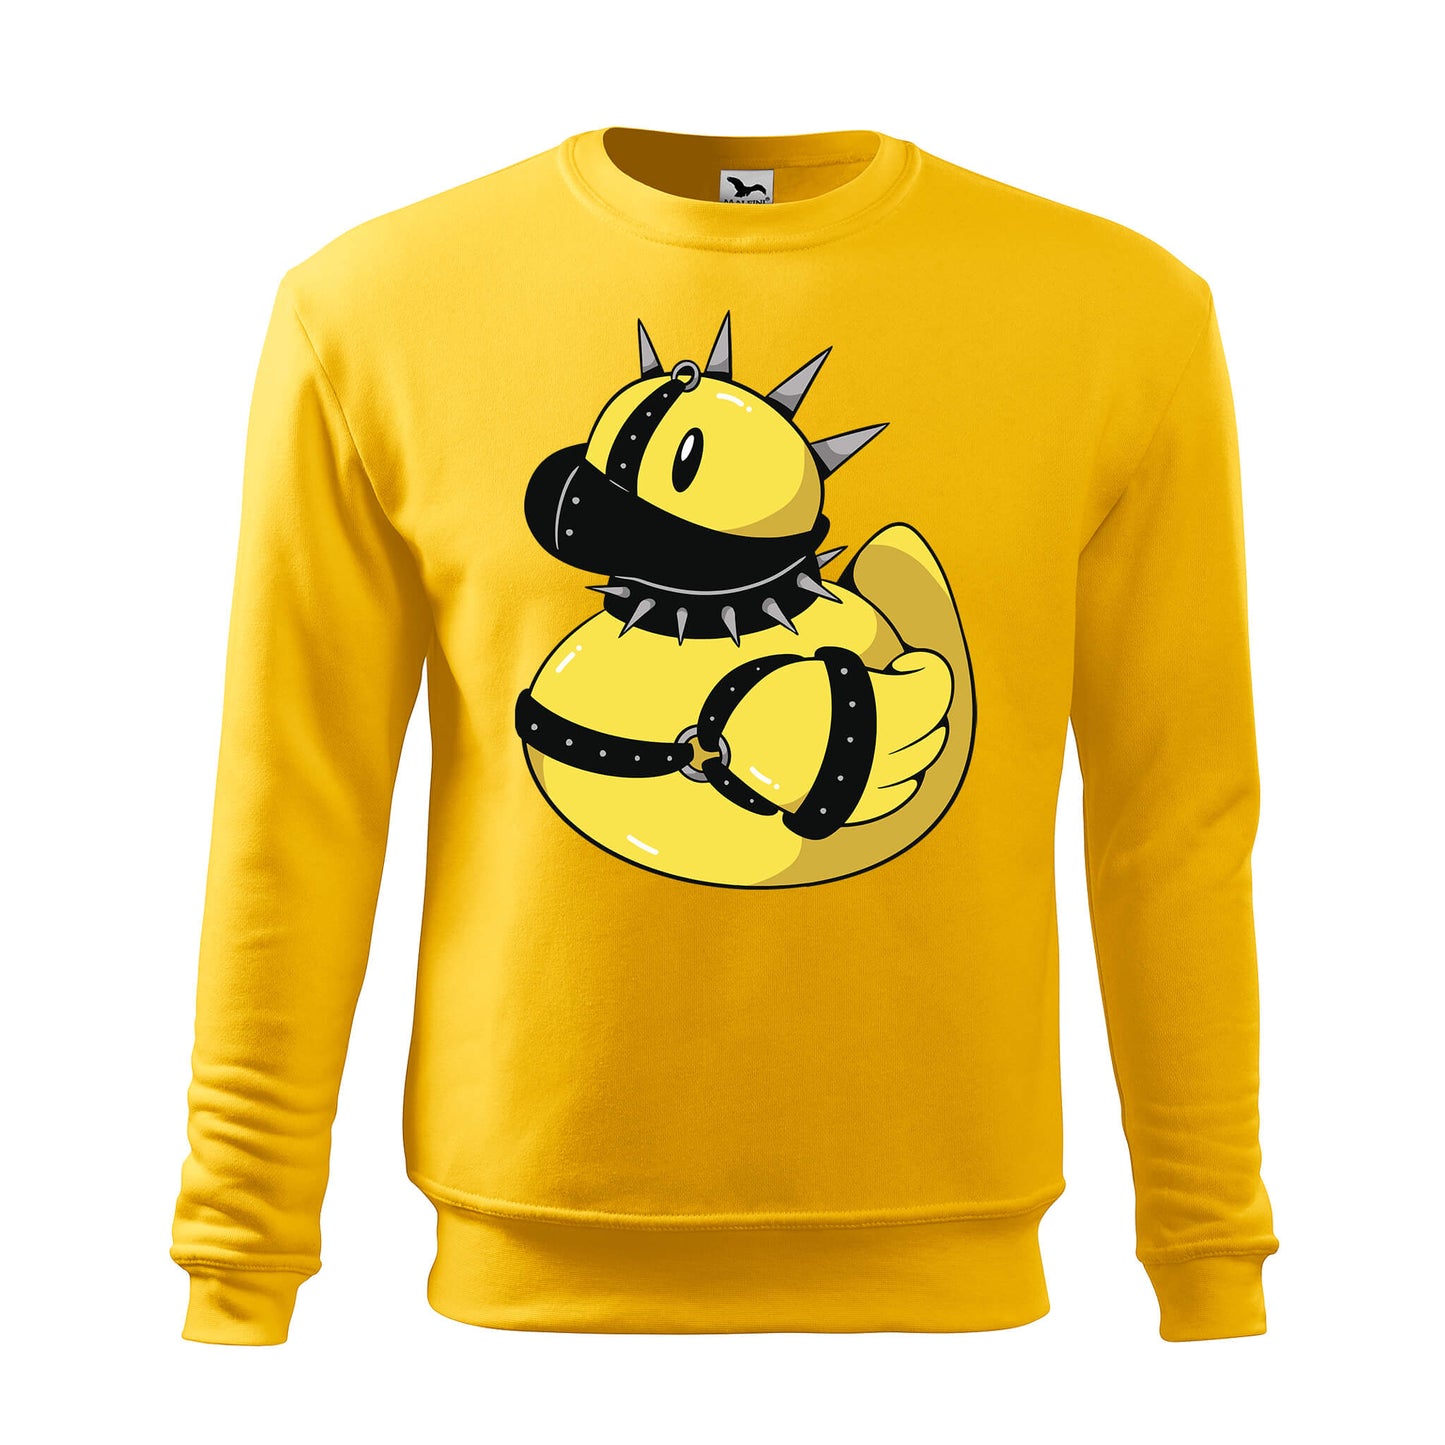 Punk rubber duck sweatshirt - rvdesignprint